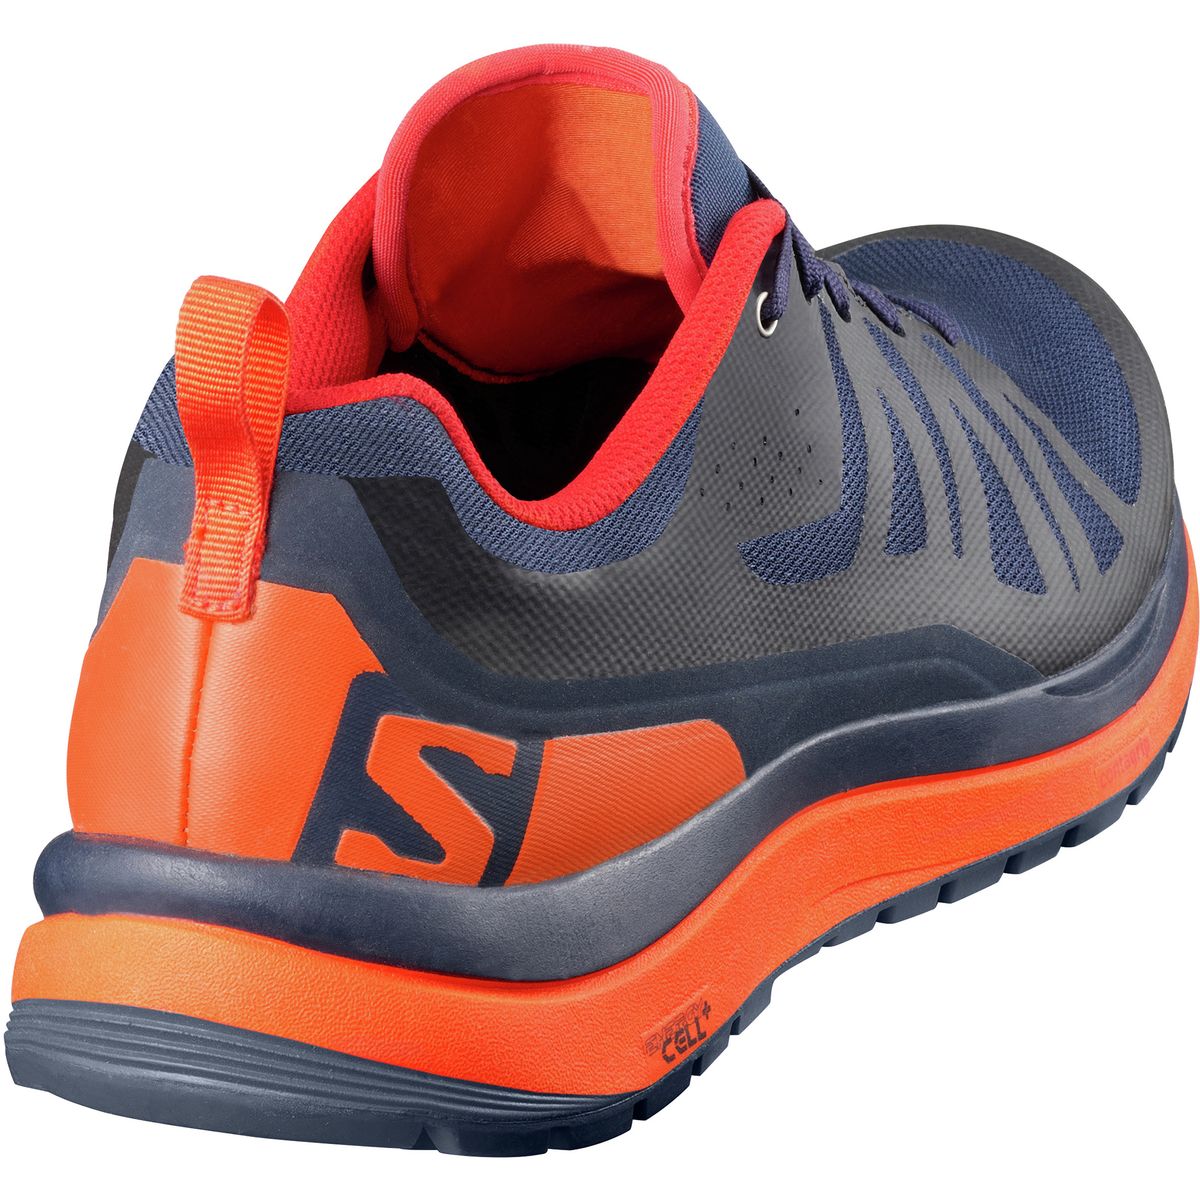 Salomon Odyssey Pro Hiking Shoe - Men's - Footwear